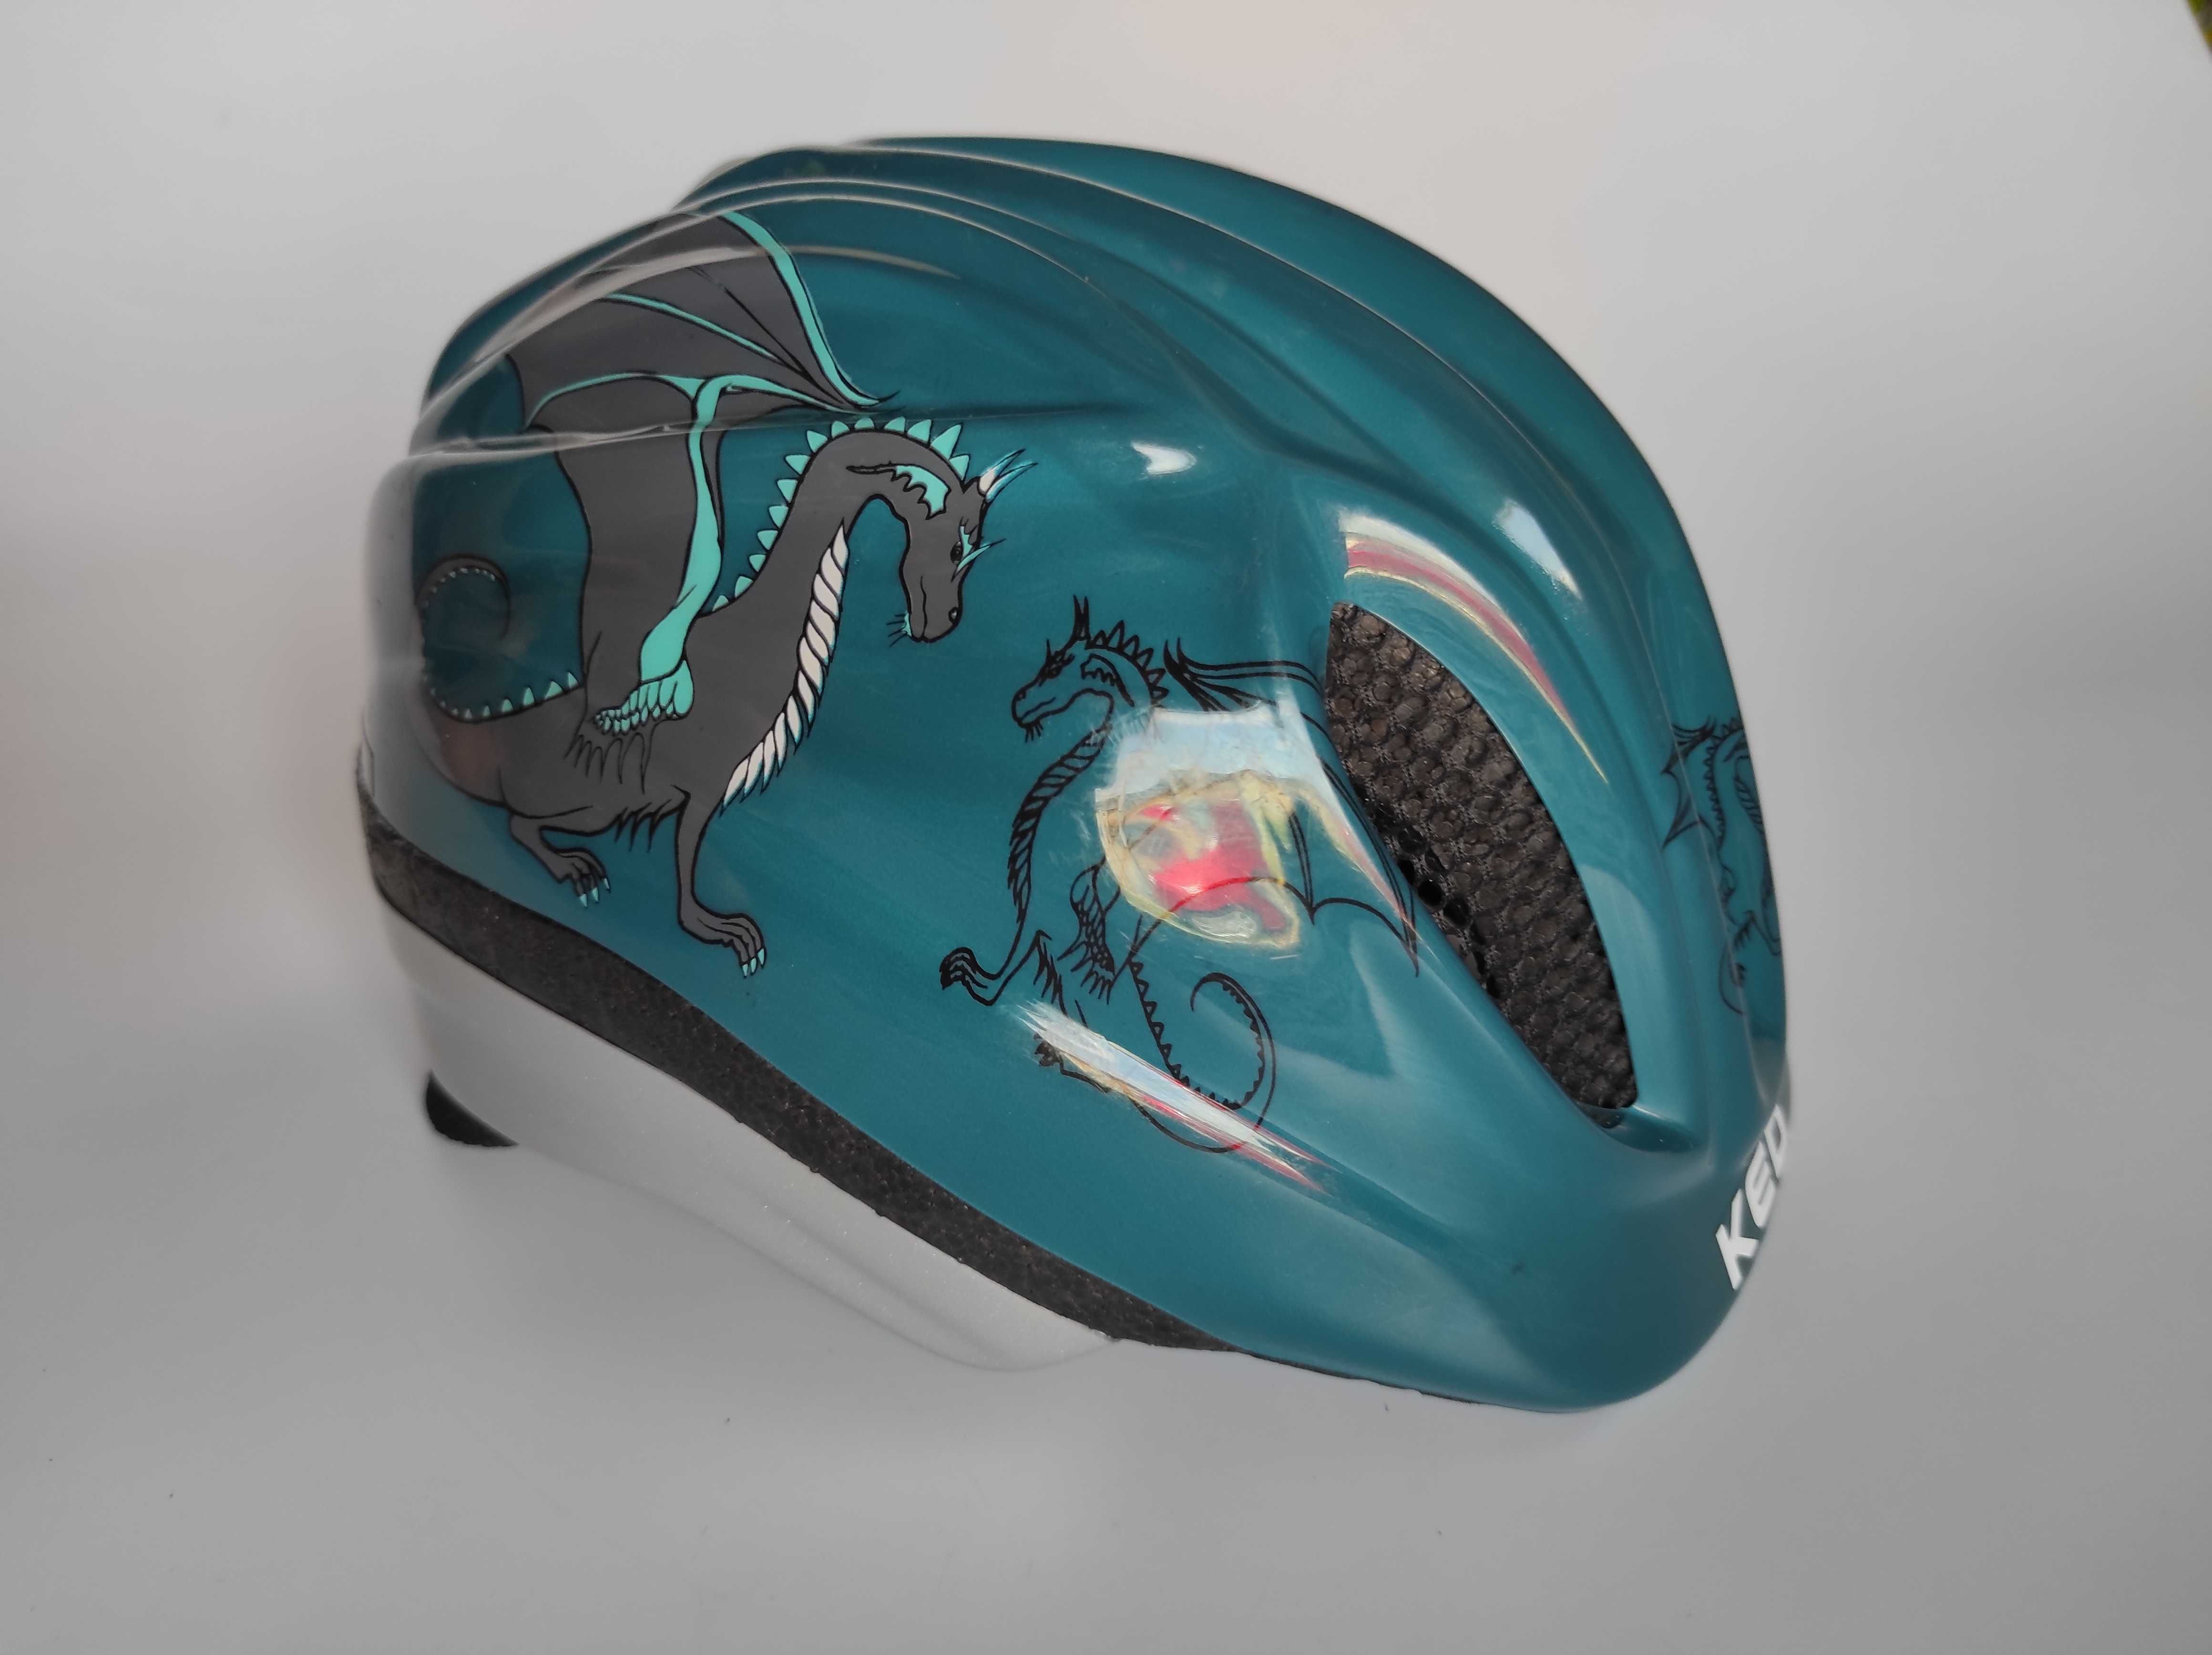 Детский защитный шлем Ked Meggy 2, размер 46-51см, велосипедный